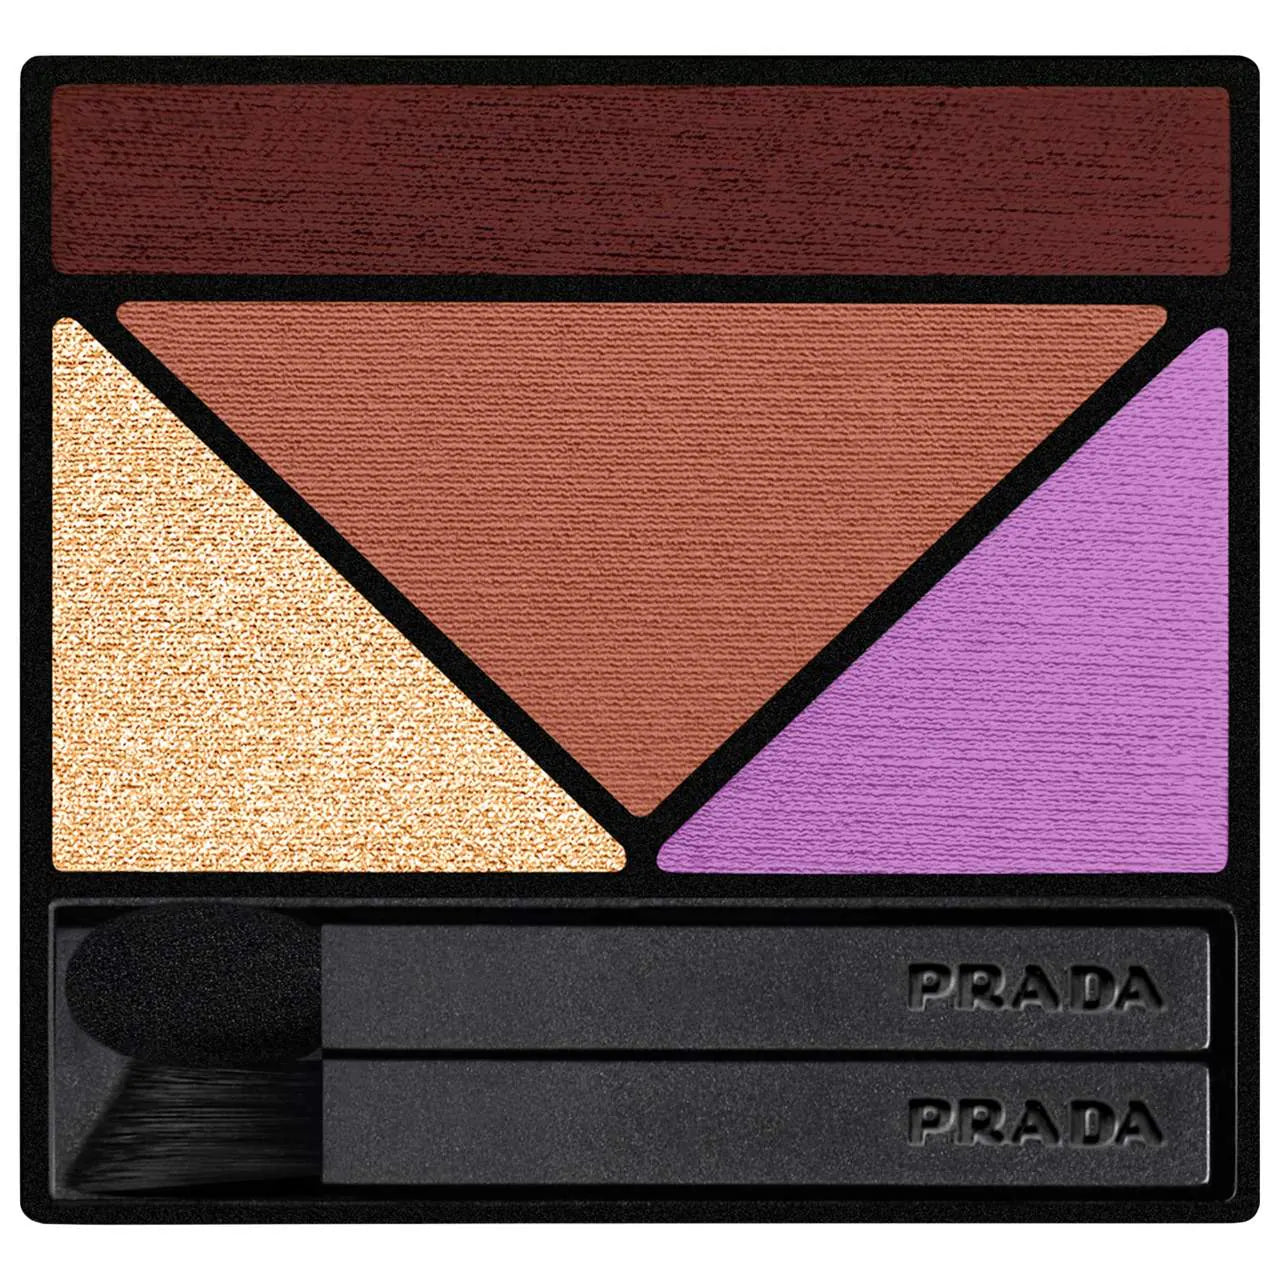 Prada Beauty Dimensions Multi-Effect Refillable Eyeshadow Palette in 01 PORTRAIT